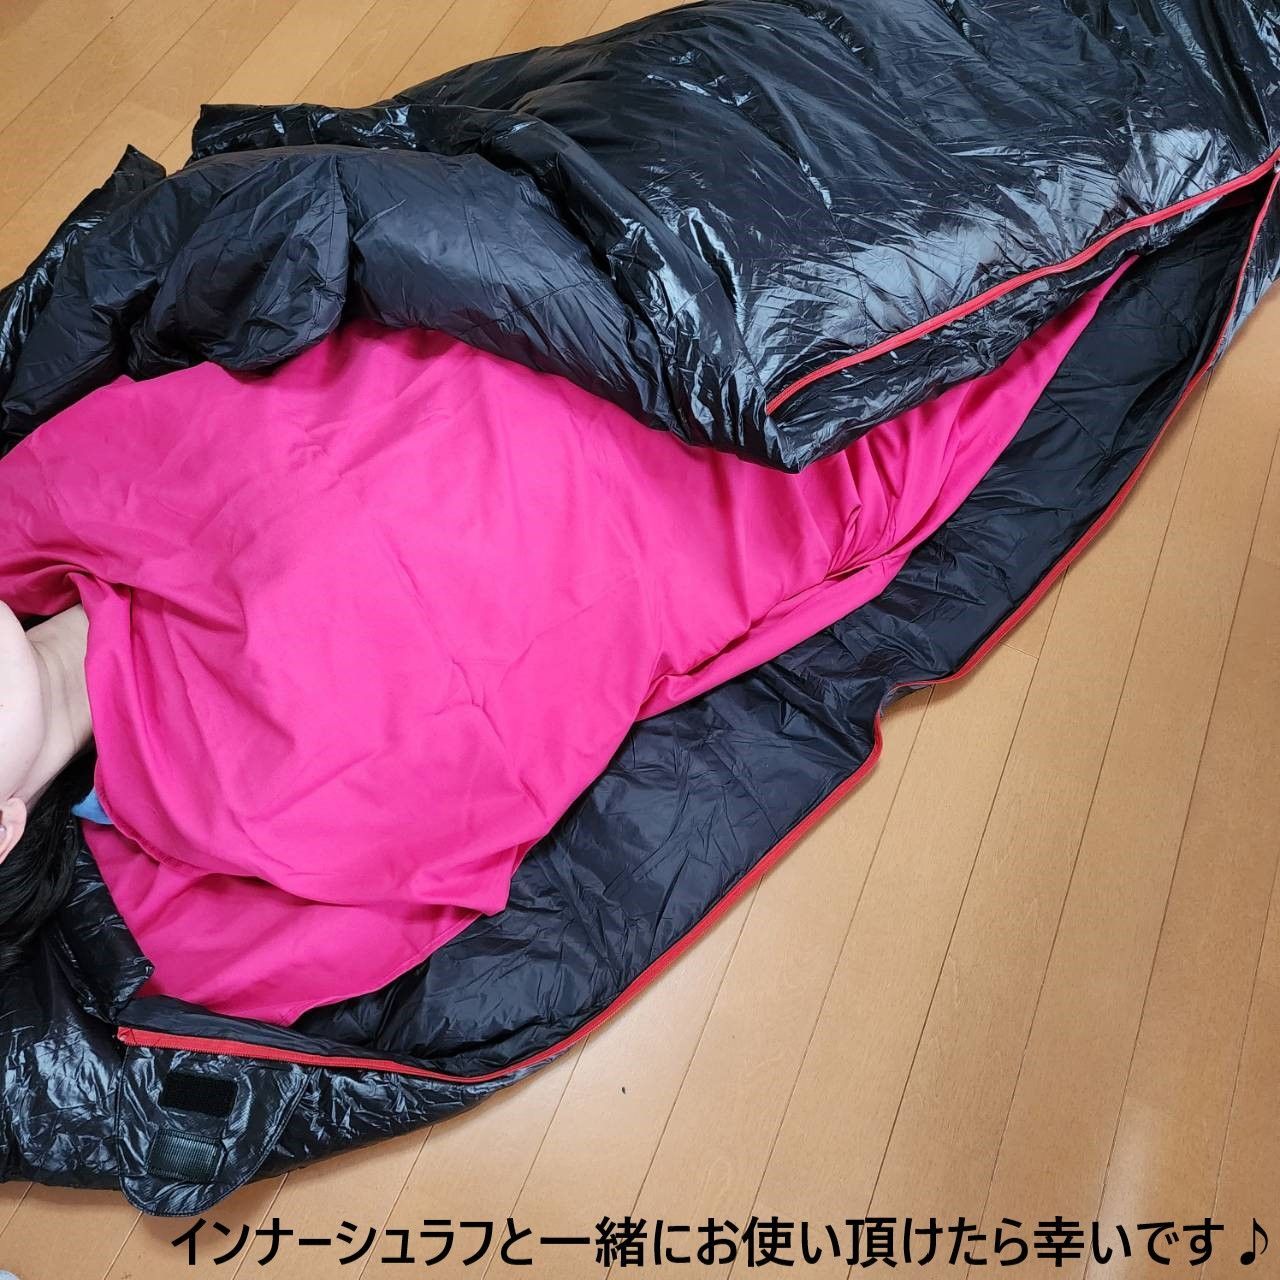 アウトドア 防水 グース ダウン マミー型 寝袋 シュラフ オレンジ 400g 